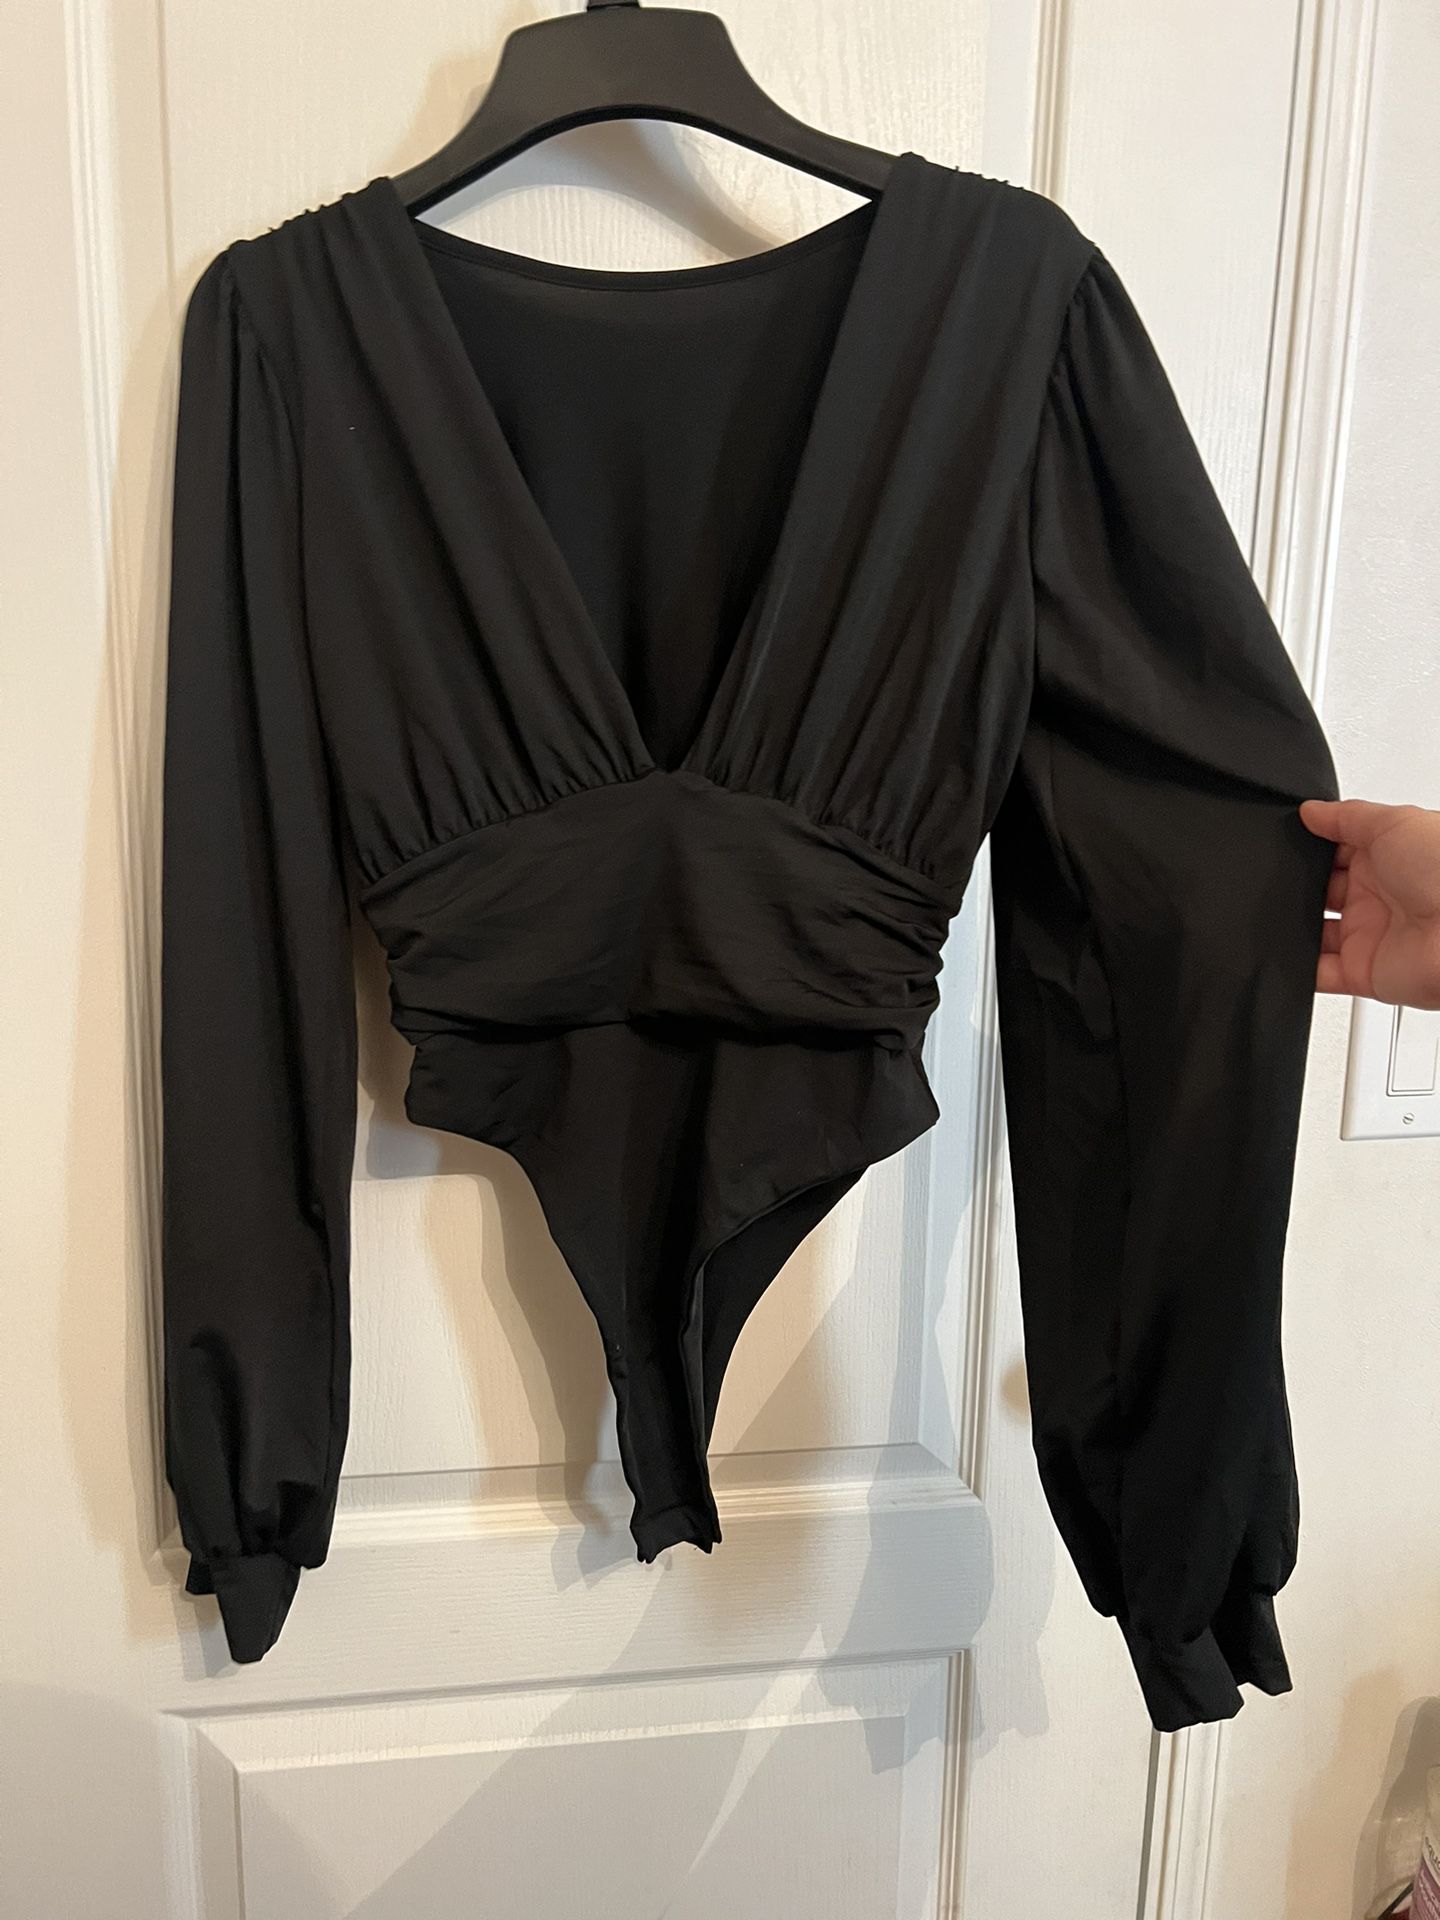 NWOT- Sexy Black Bubble Sleeve Low Cut Long Sleeve Bodysuit 🖤◾️ (sexy Bodysuit /black Bodysuit/outer Wear /night Club )